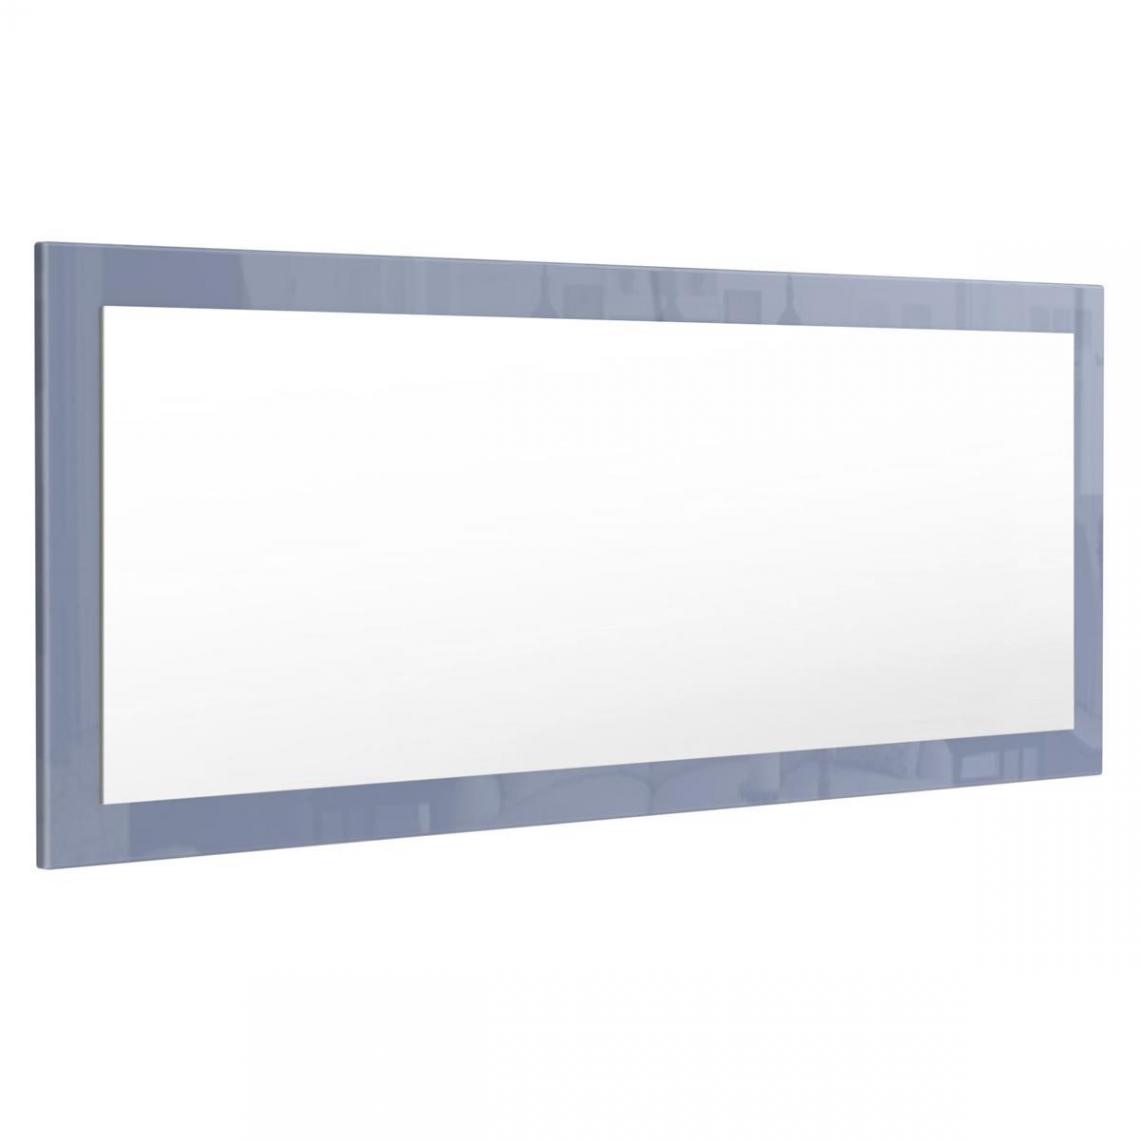 Mpc - Miroir gris brillant (HxLxP): 139 x 55 x 2 - Miroir de salle de bain